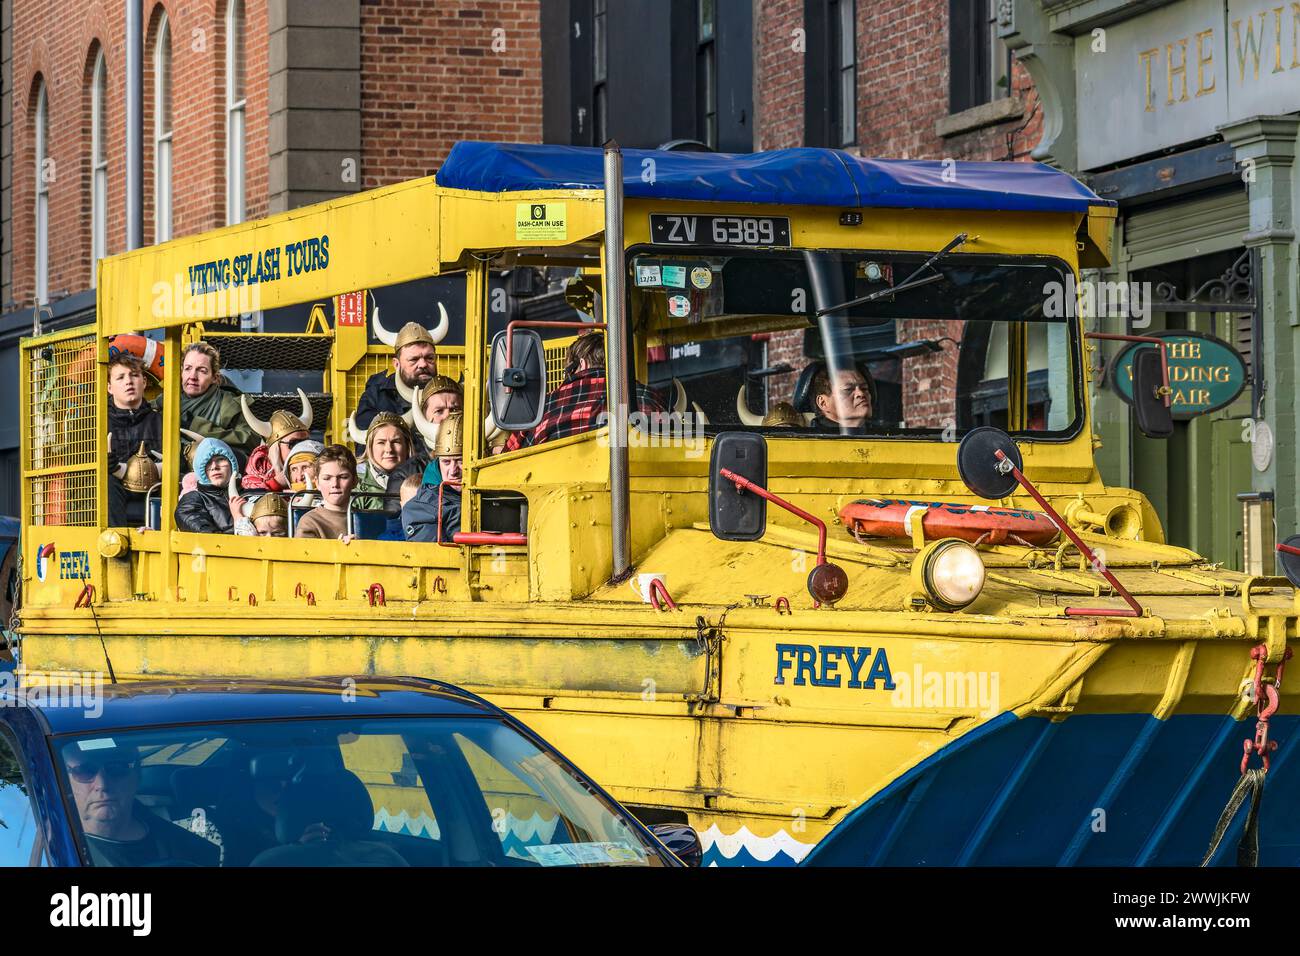 Tour Viking Splash Tour, tour panoramico anfibio, in autobus, barca "Freya" con turisti a bordo. Dublino. Irlanda. Foto Stock